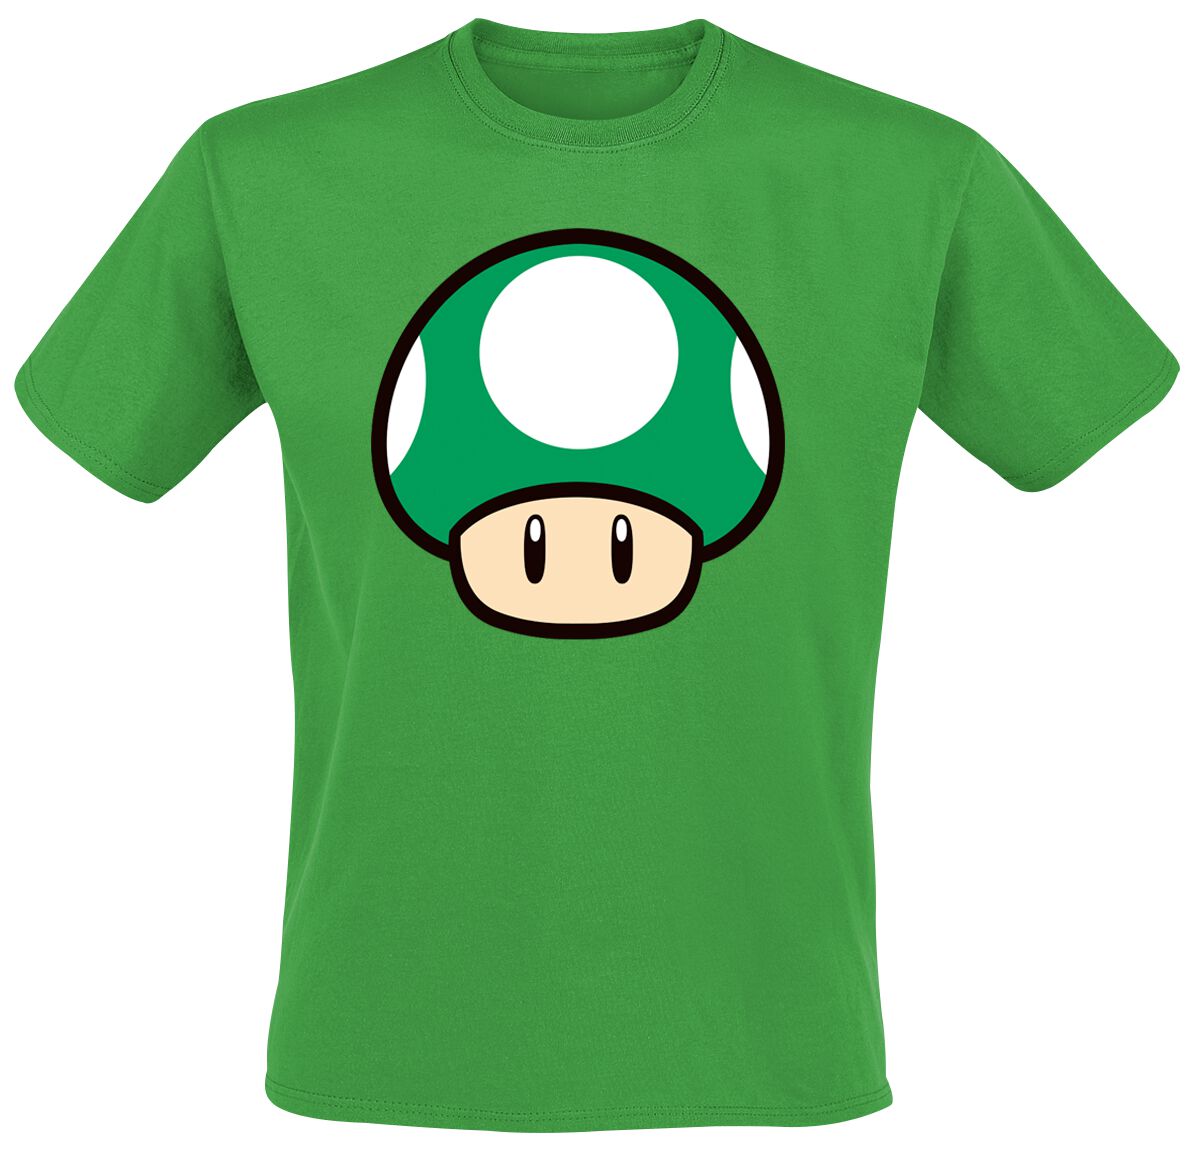 Super Mario - Gaming T-Shirt - Mushroom - S bis XL - für Männer - Größe S - grün